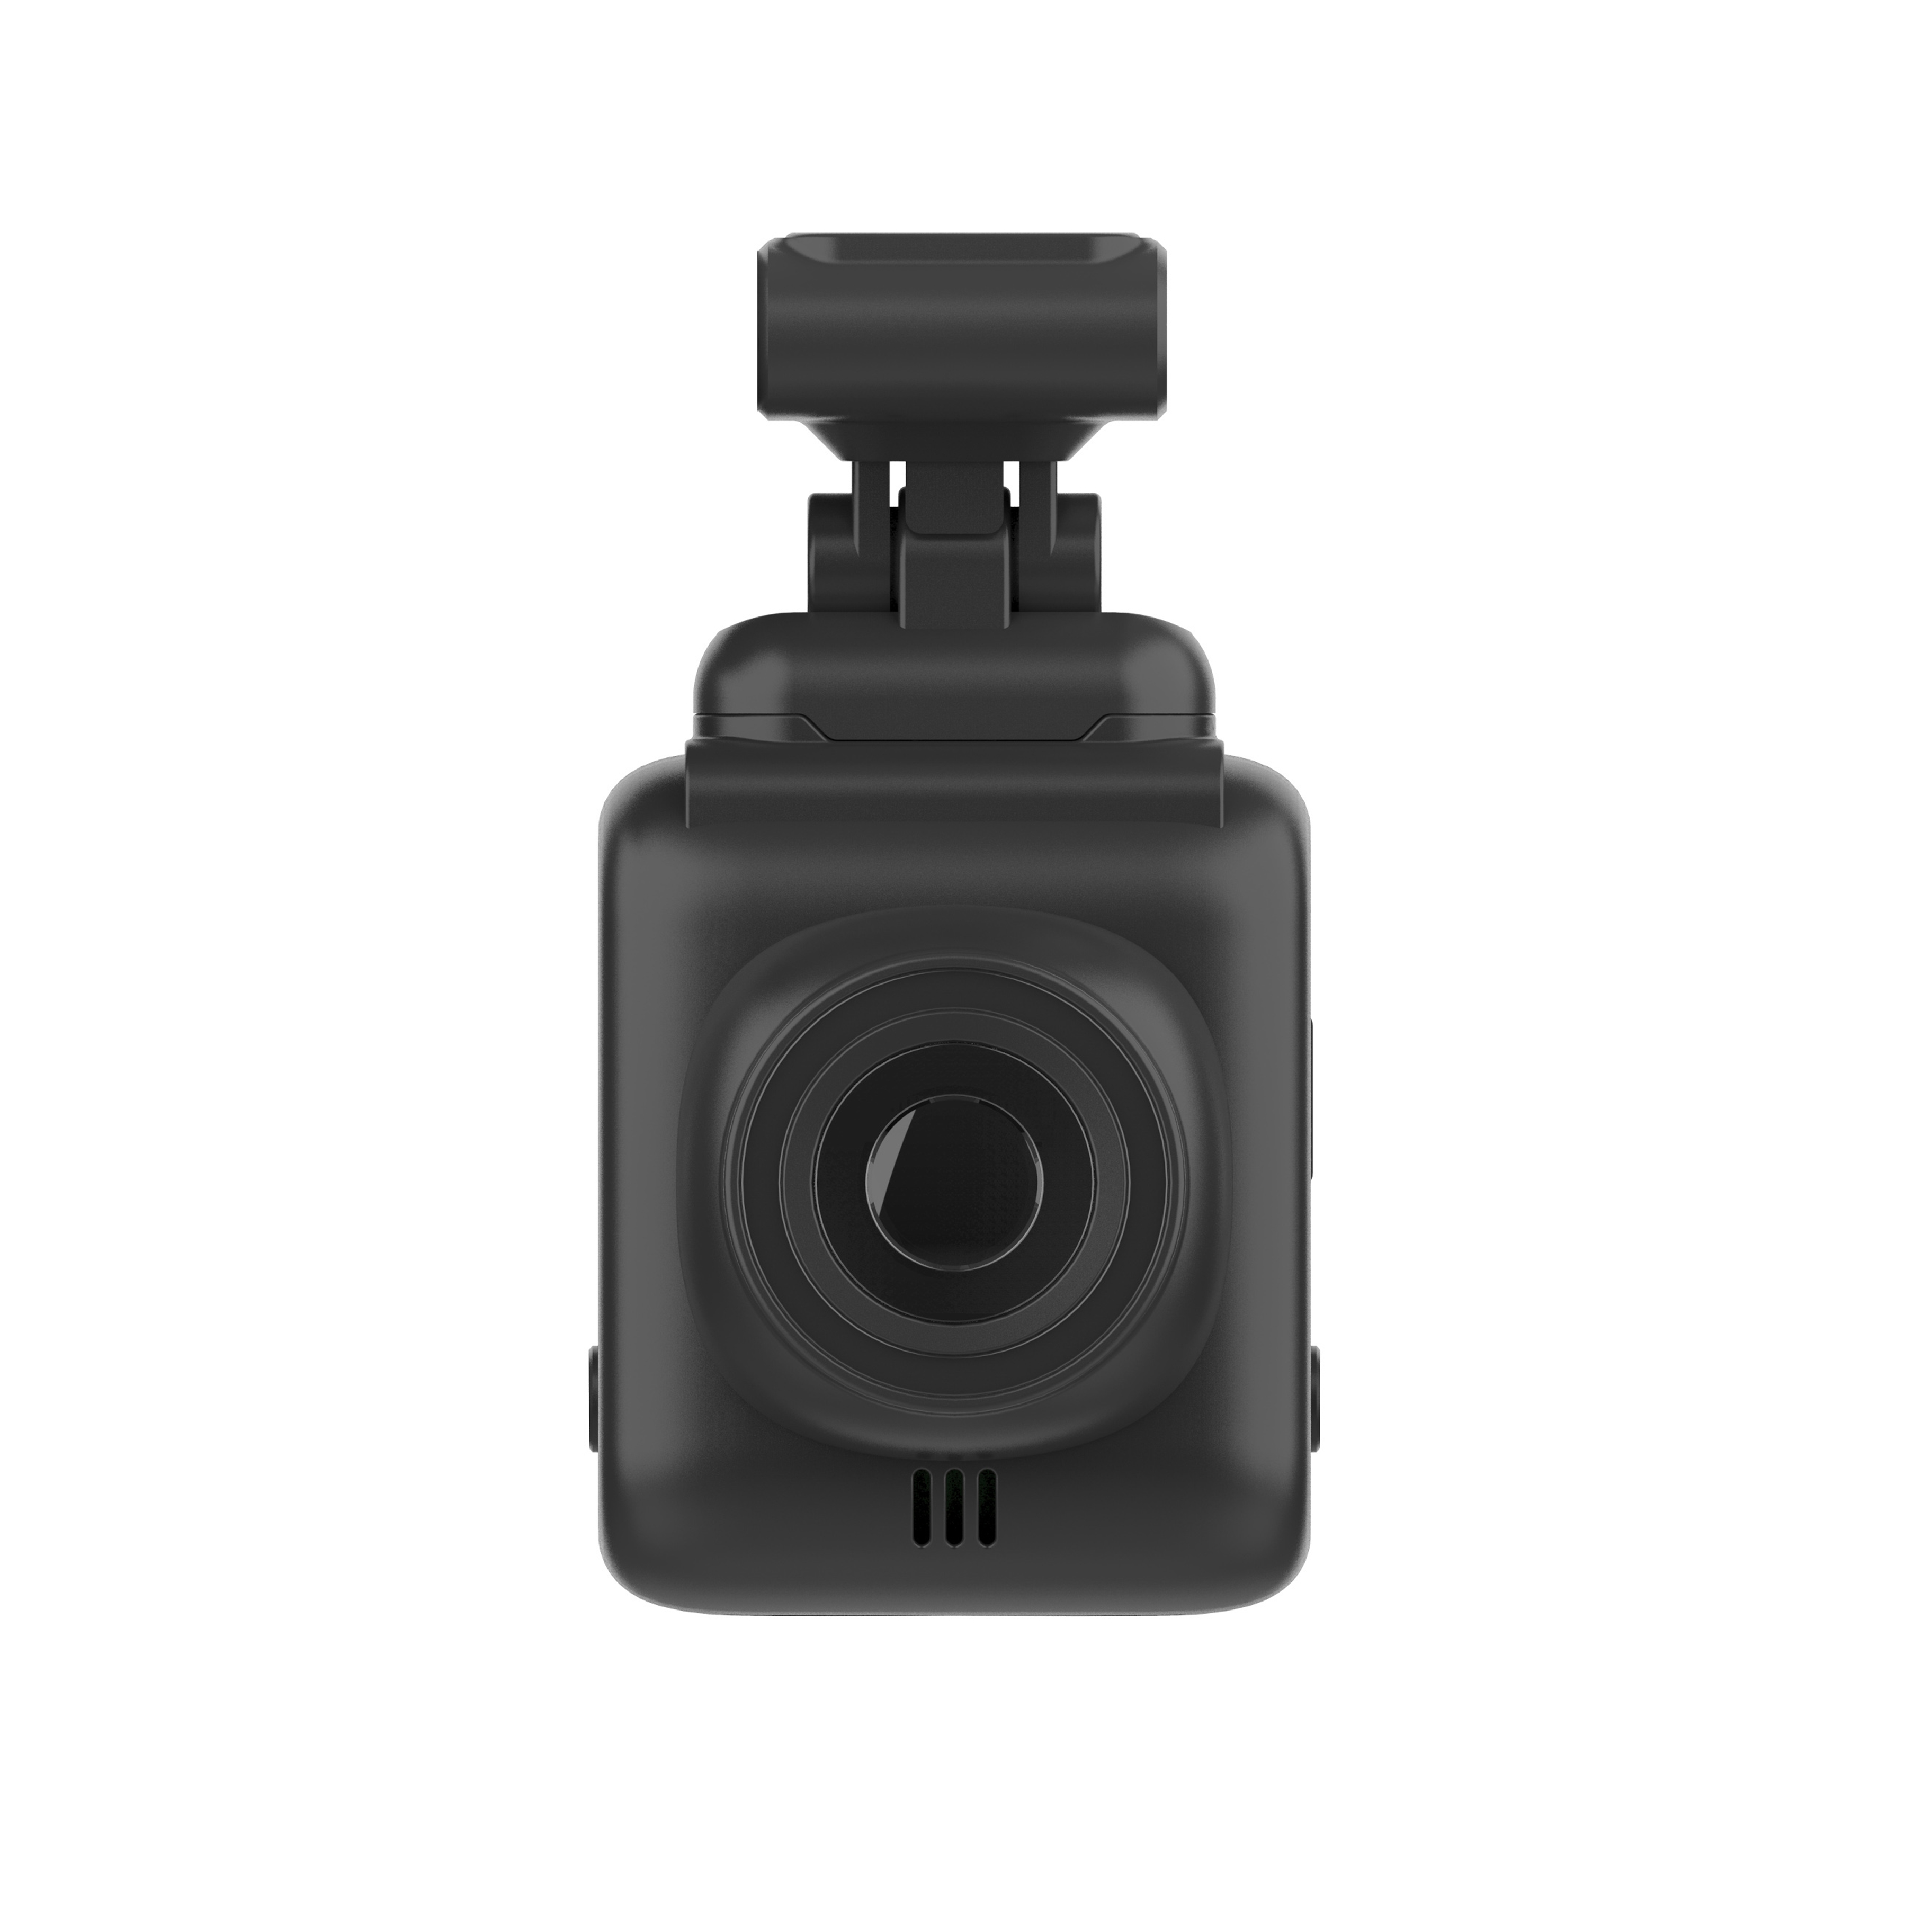 Camera Auto Tellur Dash Patrol DC1, FullHD 1080P, Lentila cu unghi larg de 140°, Card microSD, Negru 1080P imagine Black Friday 2021